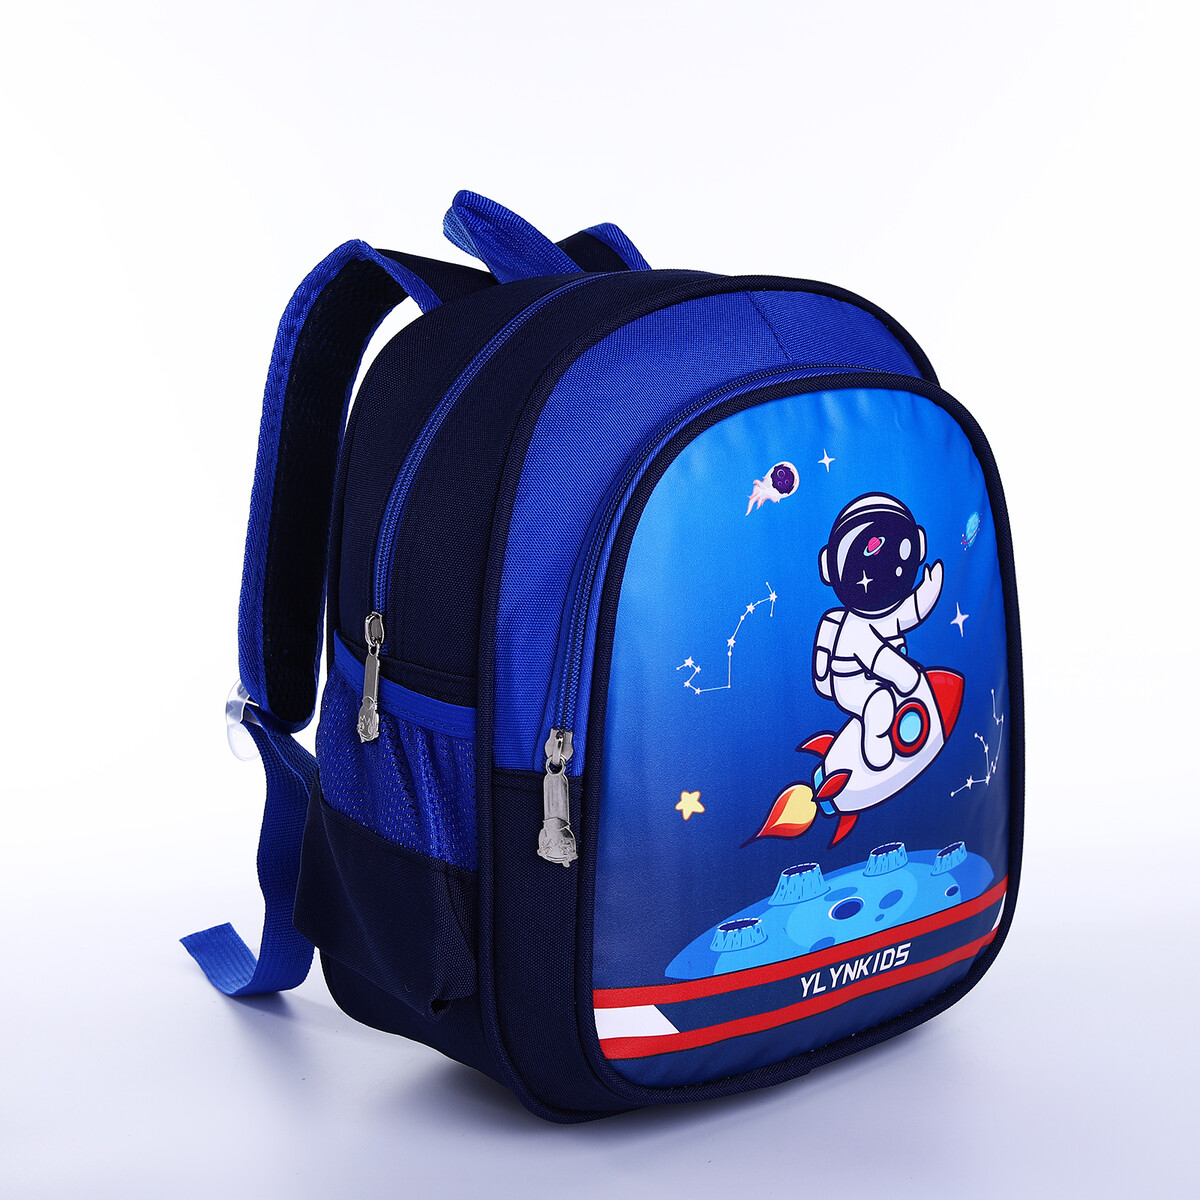 Рюкзак детский на молнии, 3 наружных кармана, цвет синий рюкзак на молнии 3 наружных кармана белый красный